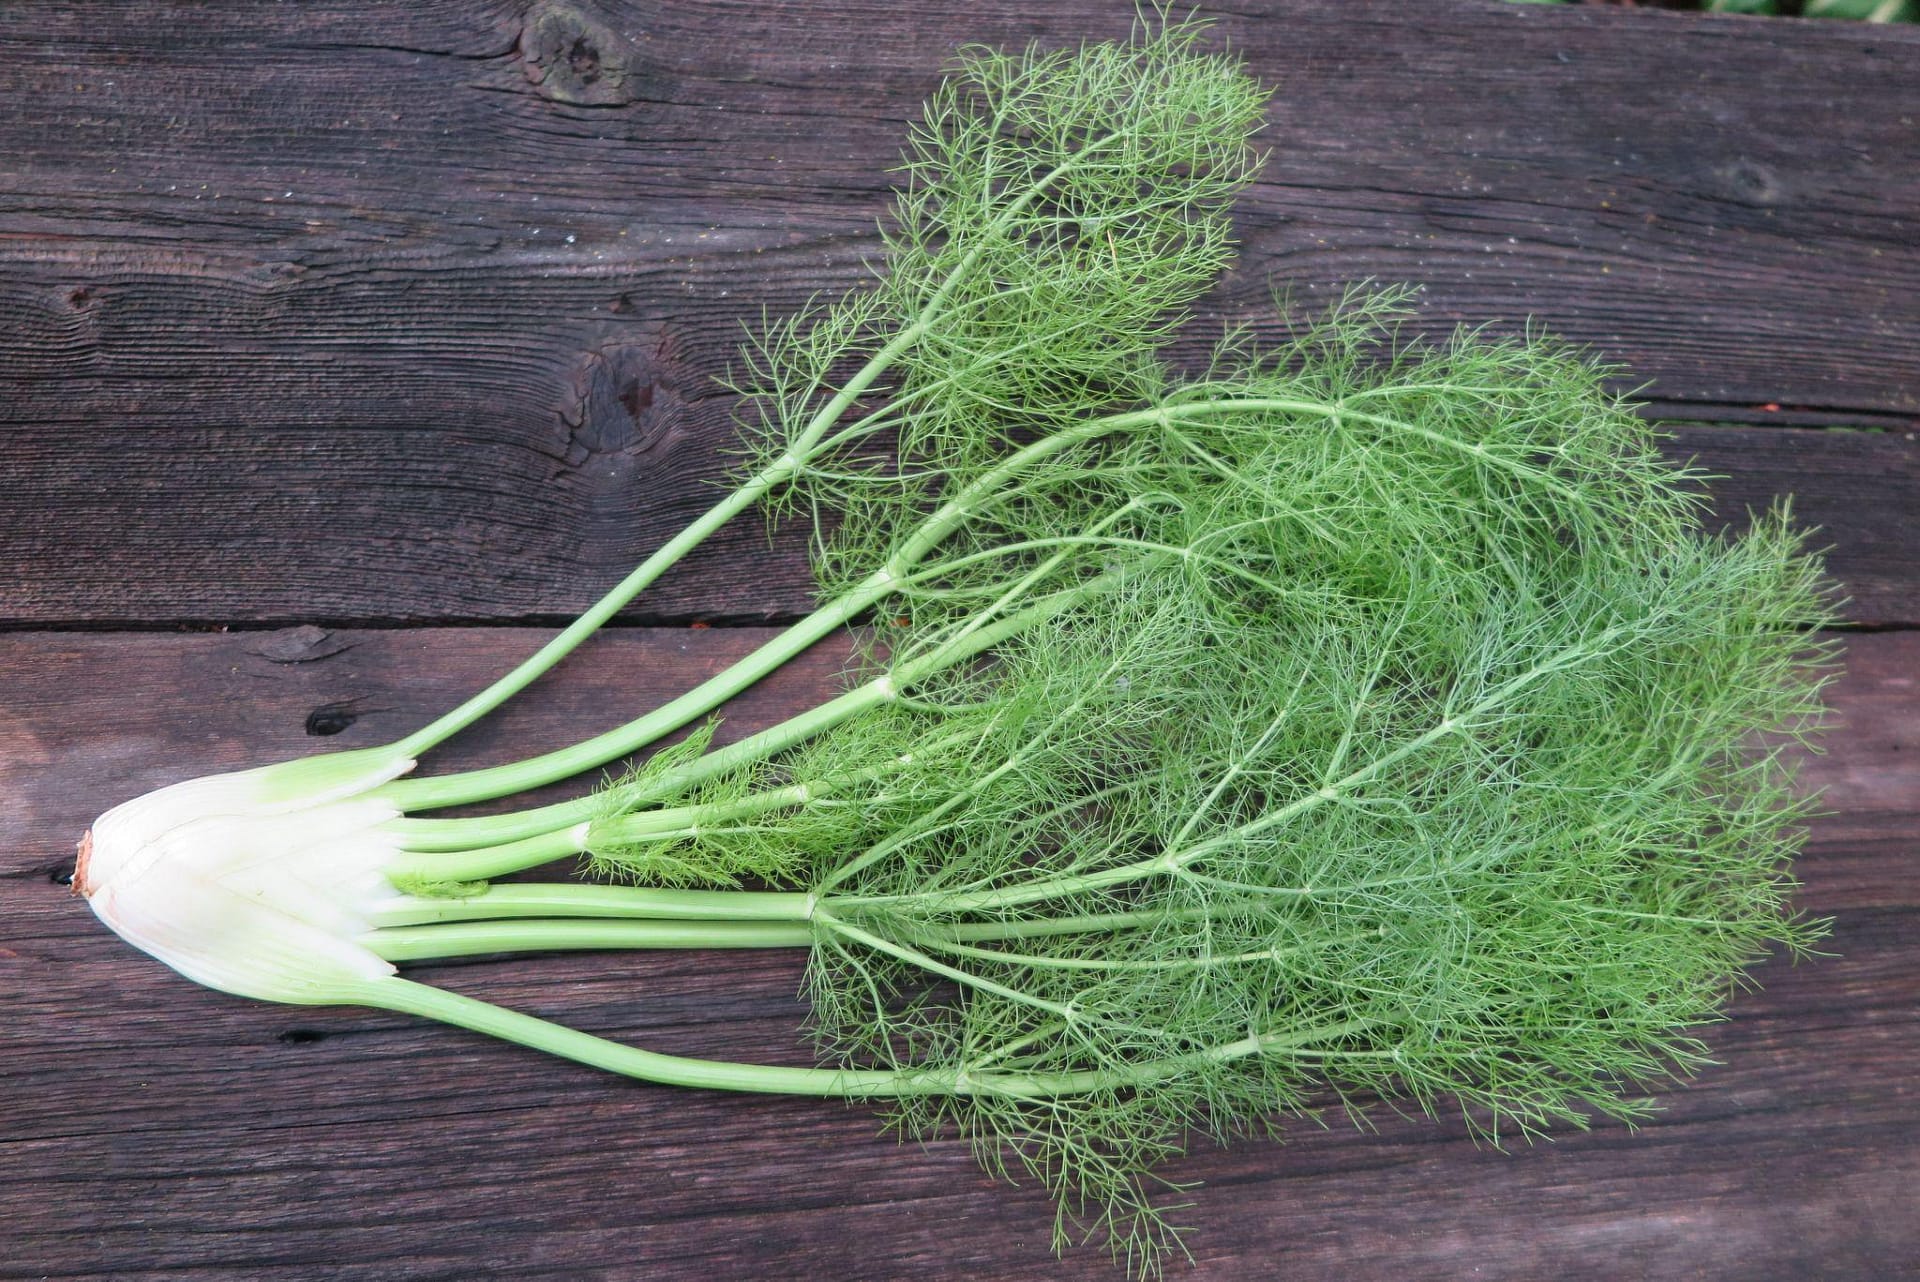 Raw fennel plant on wood background